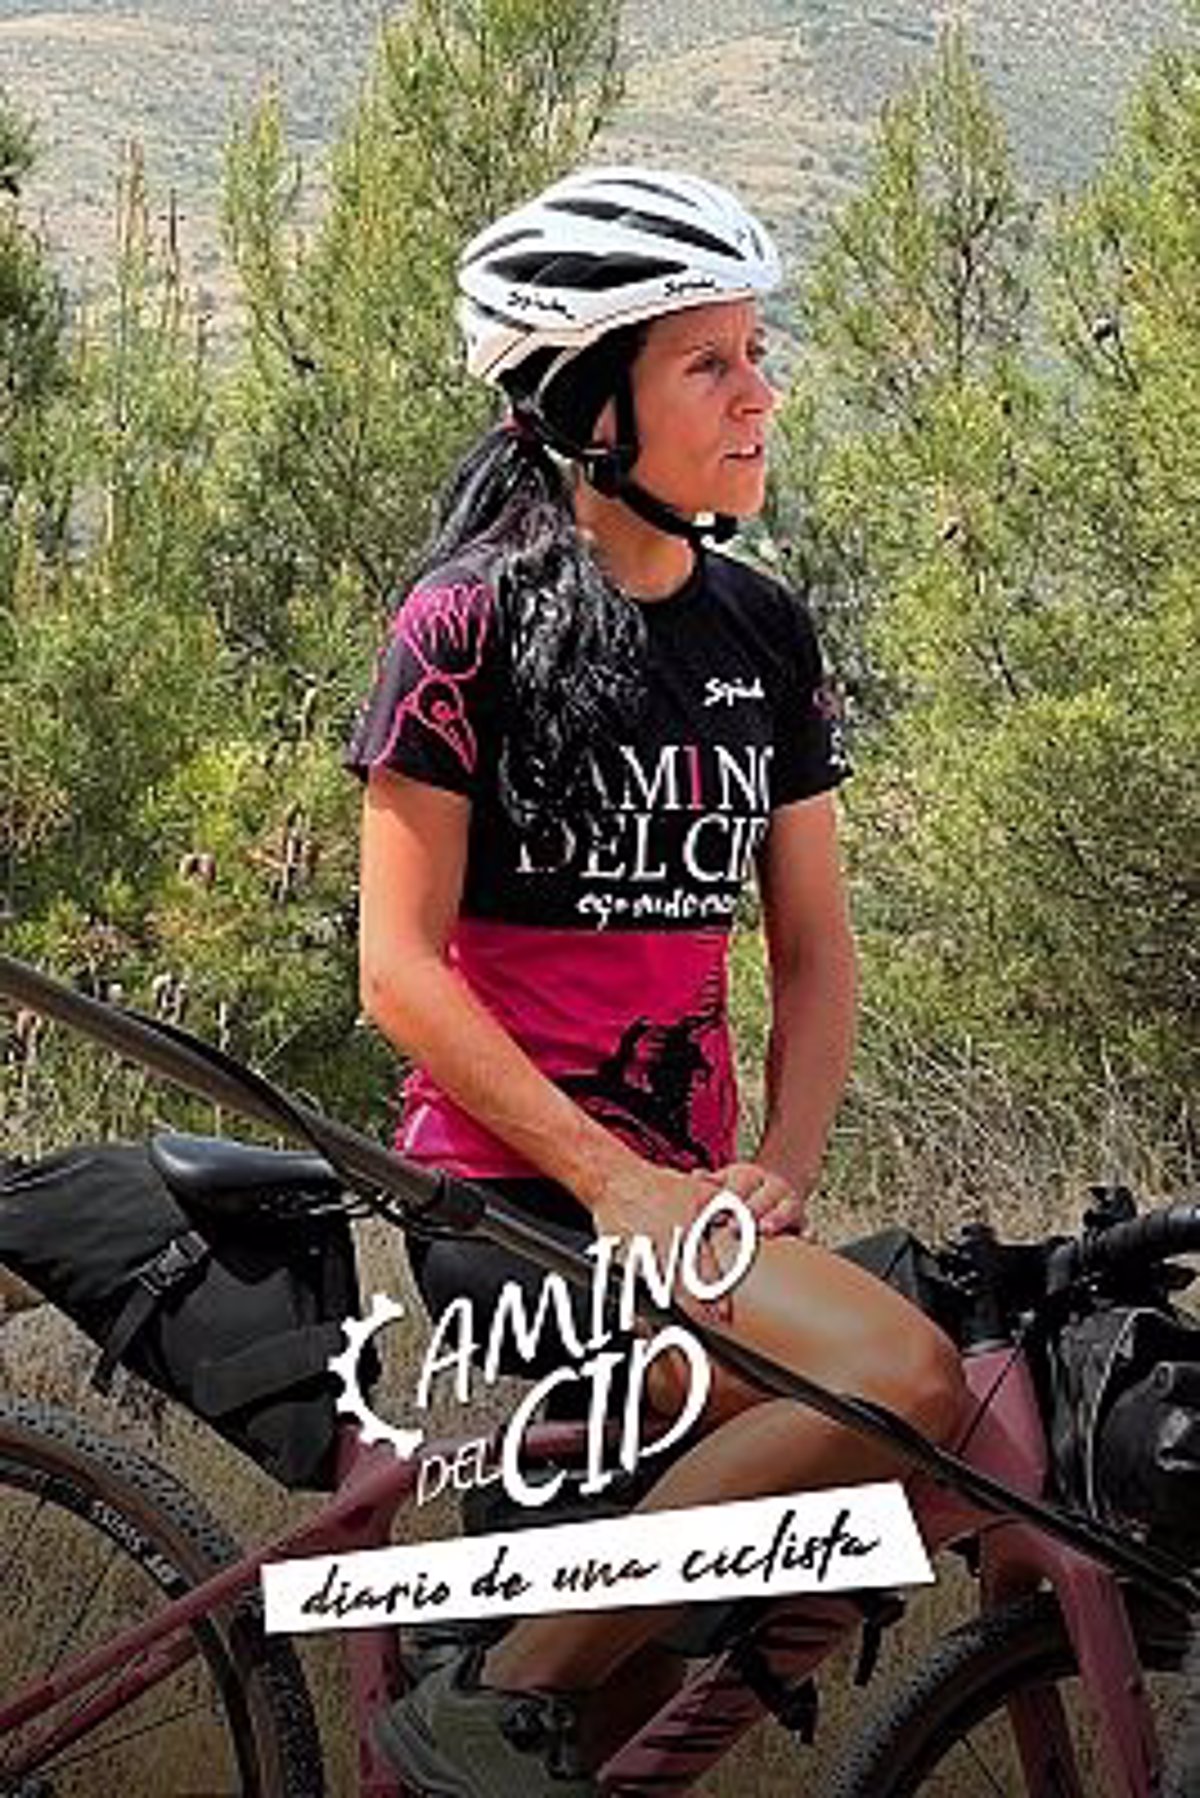 La 2 de TVE estrena el 8 de enero la serie 'El Camino del Diario de una Ciclista'